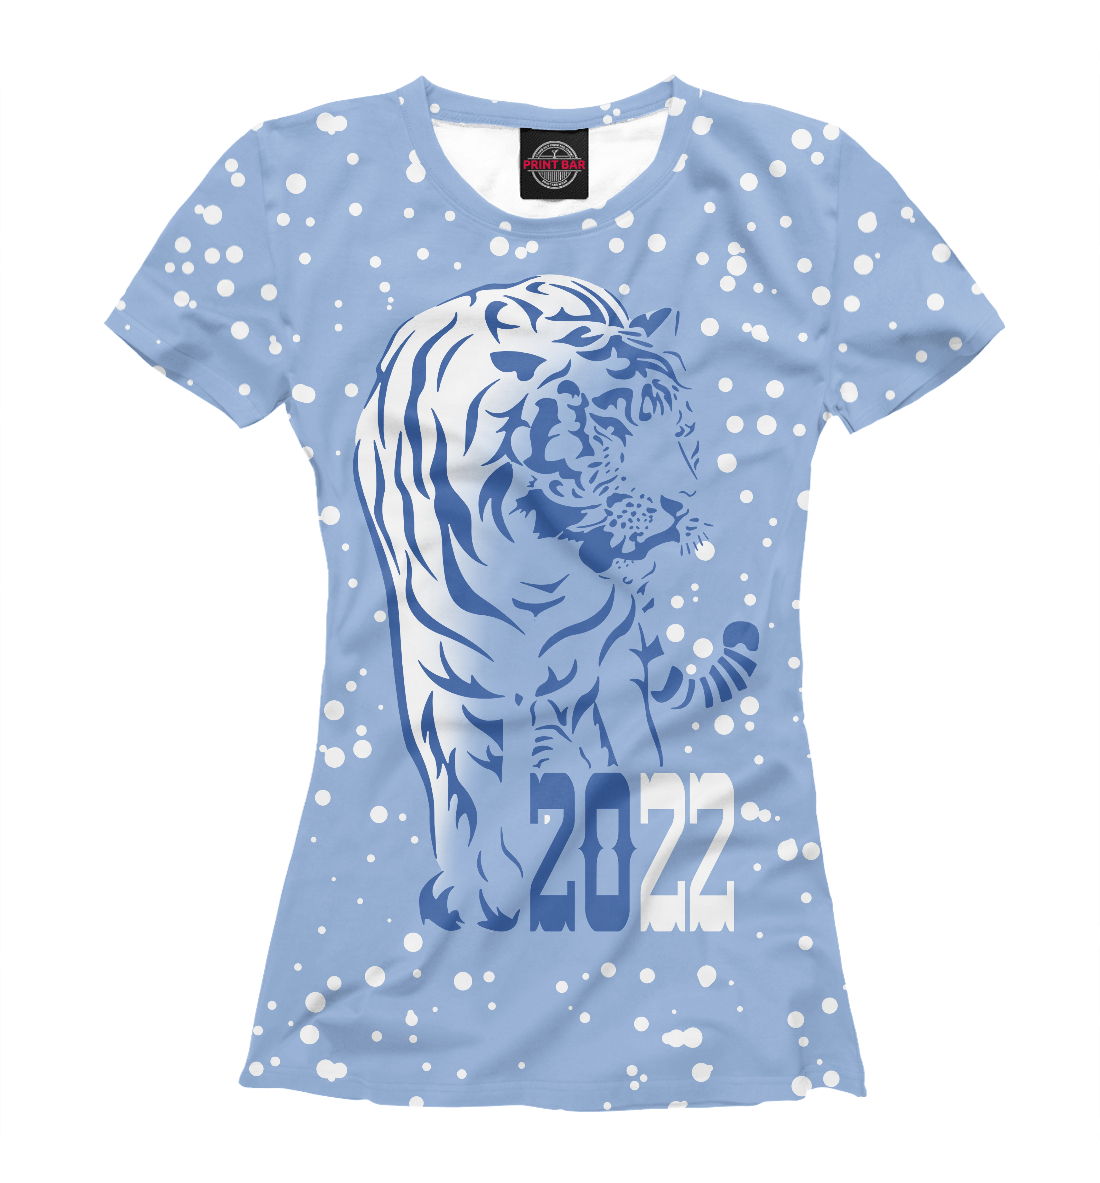 Футболка Голубой водяной тигр для девочек, артикул: NVR-742883-fut-1mp